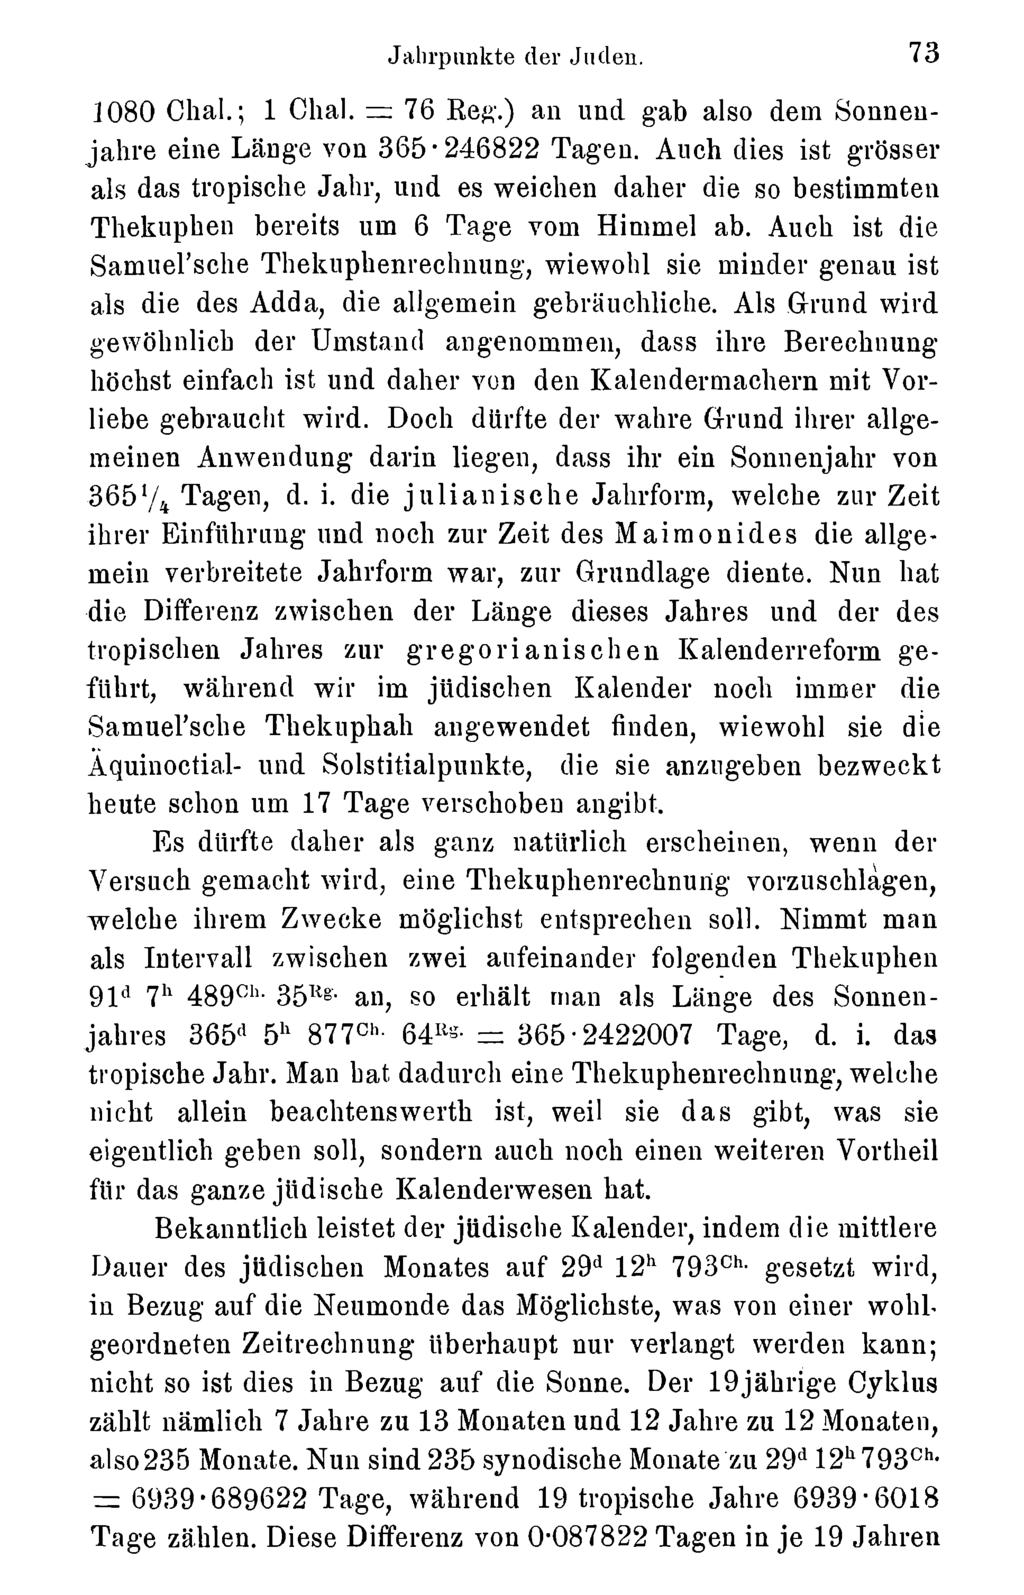 Jalirpunkte der Juden. 73 Akademie d. Wissenschaften Wien; download unter www.biologiezentrum.at 1080 Chal.; 1 Chal. =: 76 Re#.) an und. gab also dem Sonneujahre eine Länge von 365*246822 Tagen.